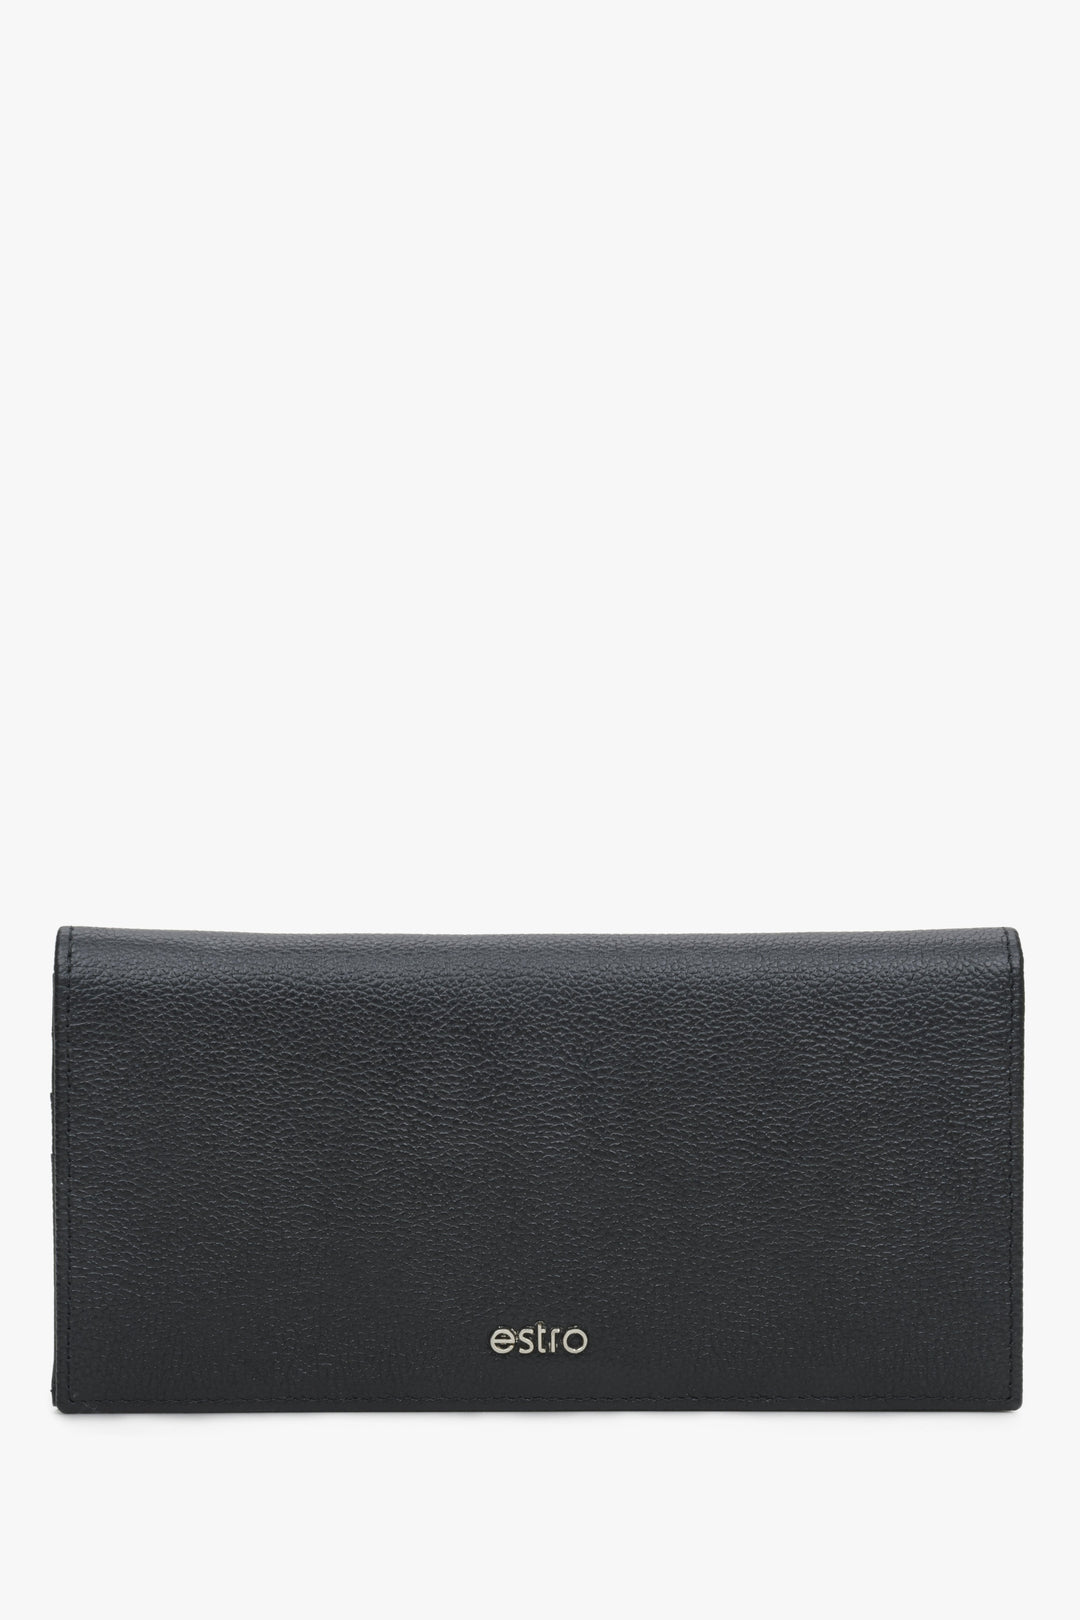 Men's Large Black Wallet made of Genuine Leather Estro ER00114458.